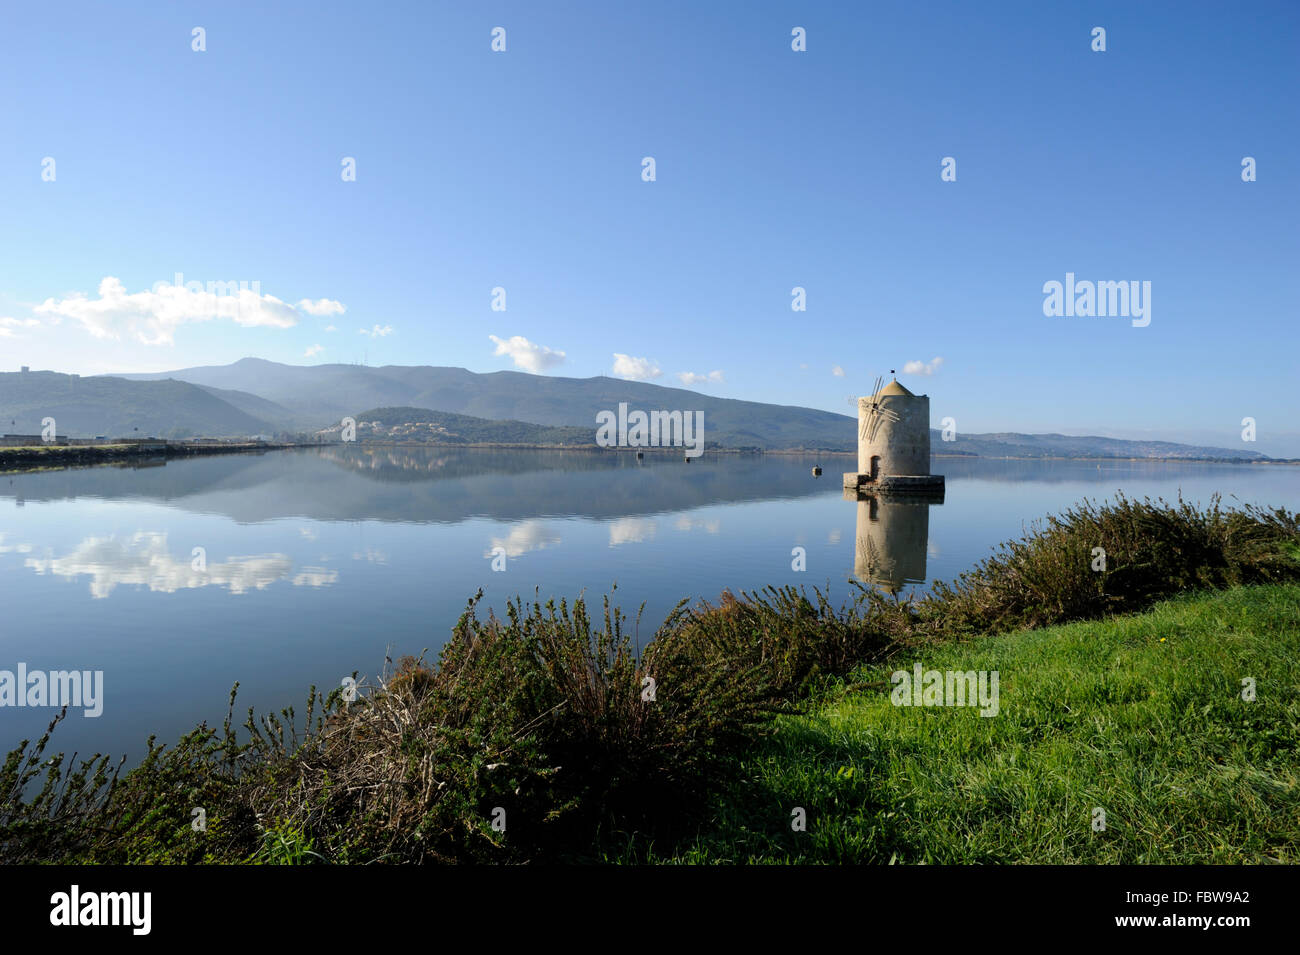 italy, tuscany, argentario, orbetello, lagoon, ancient windmill Stock Photo